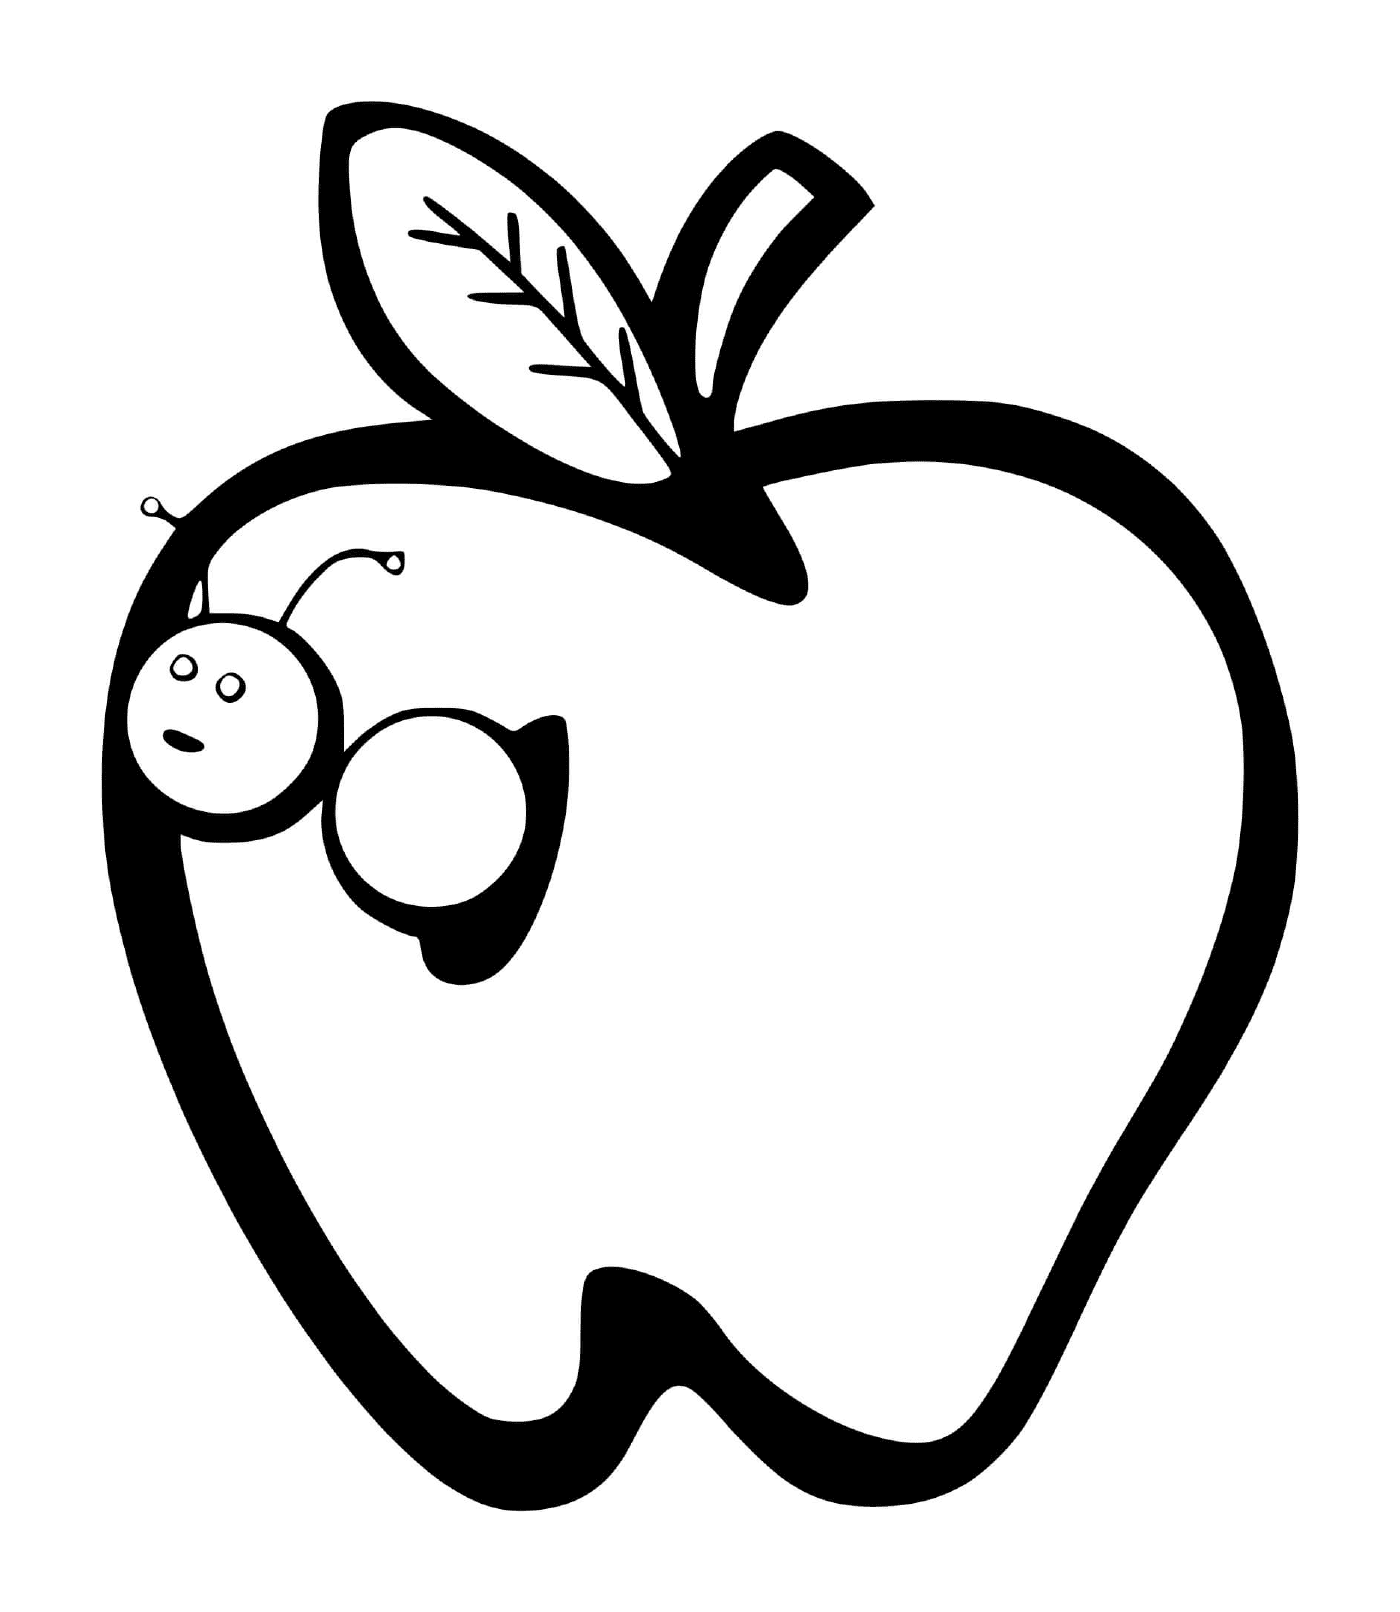  Apple with earthworm 